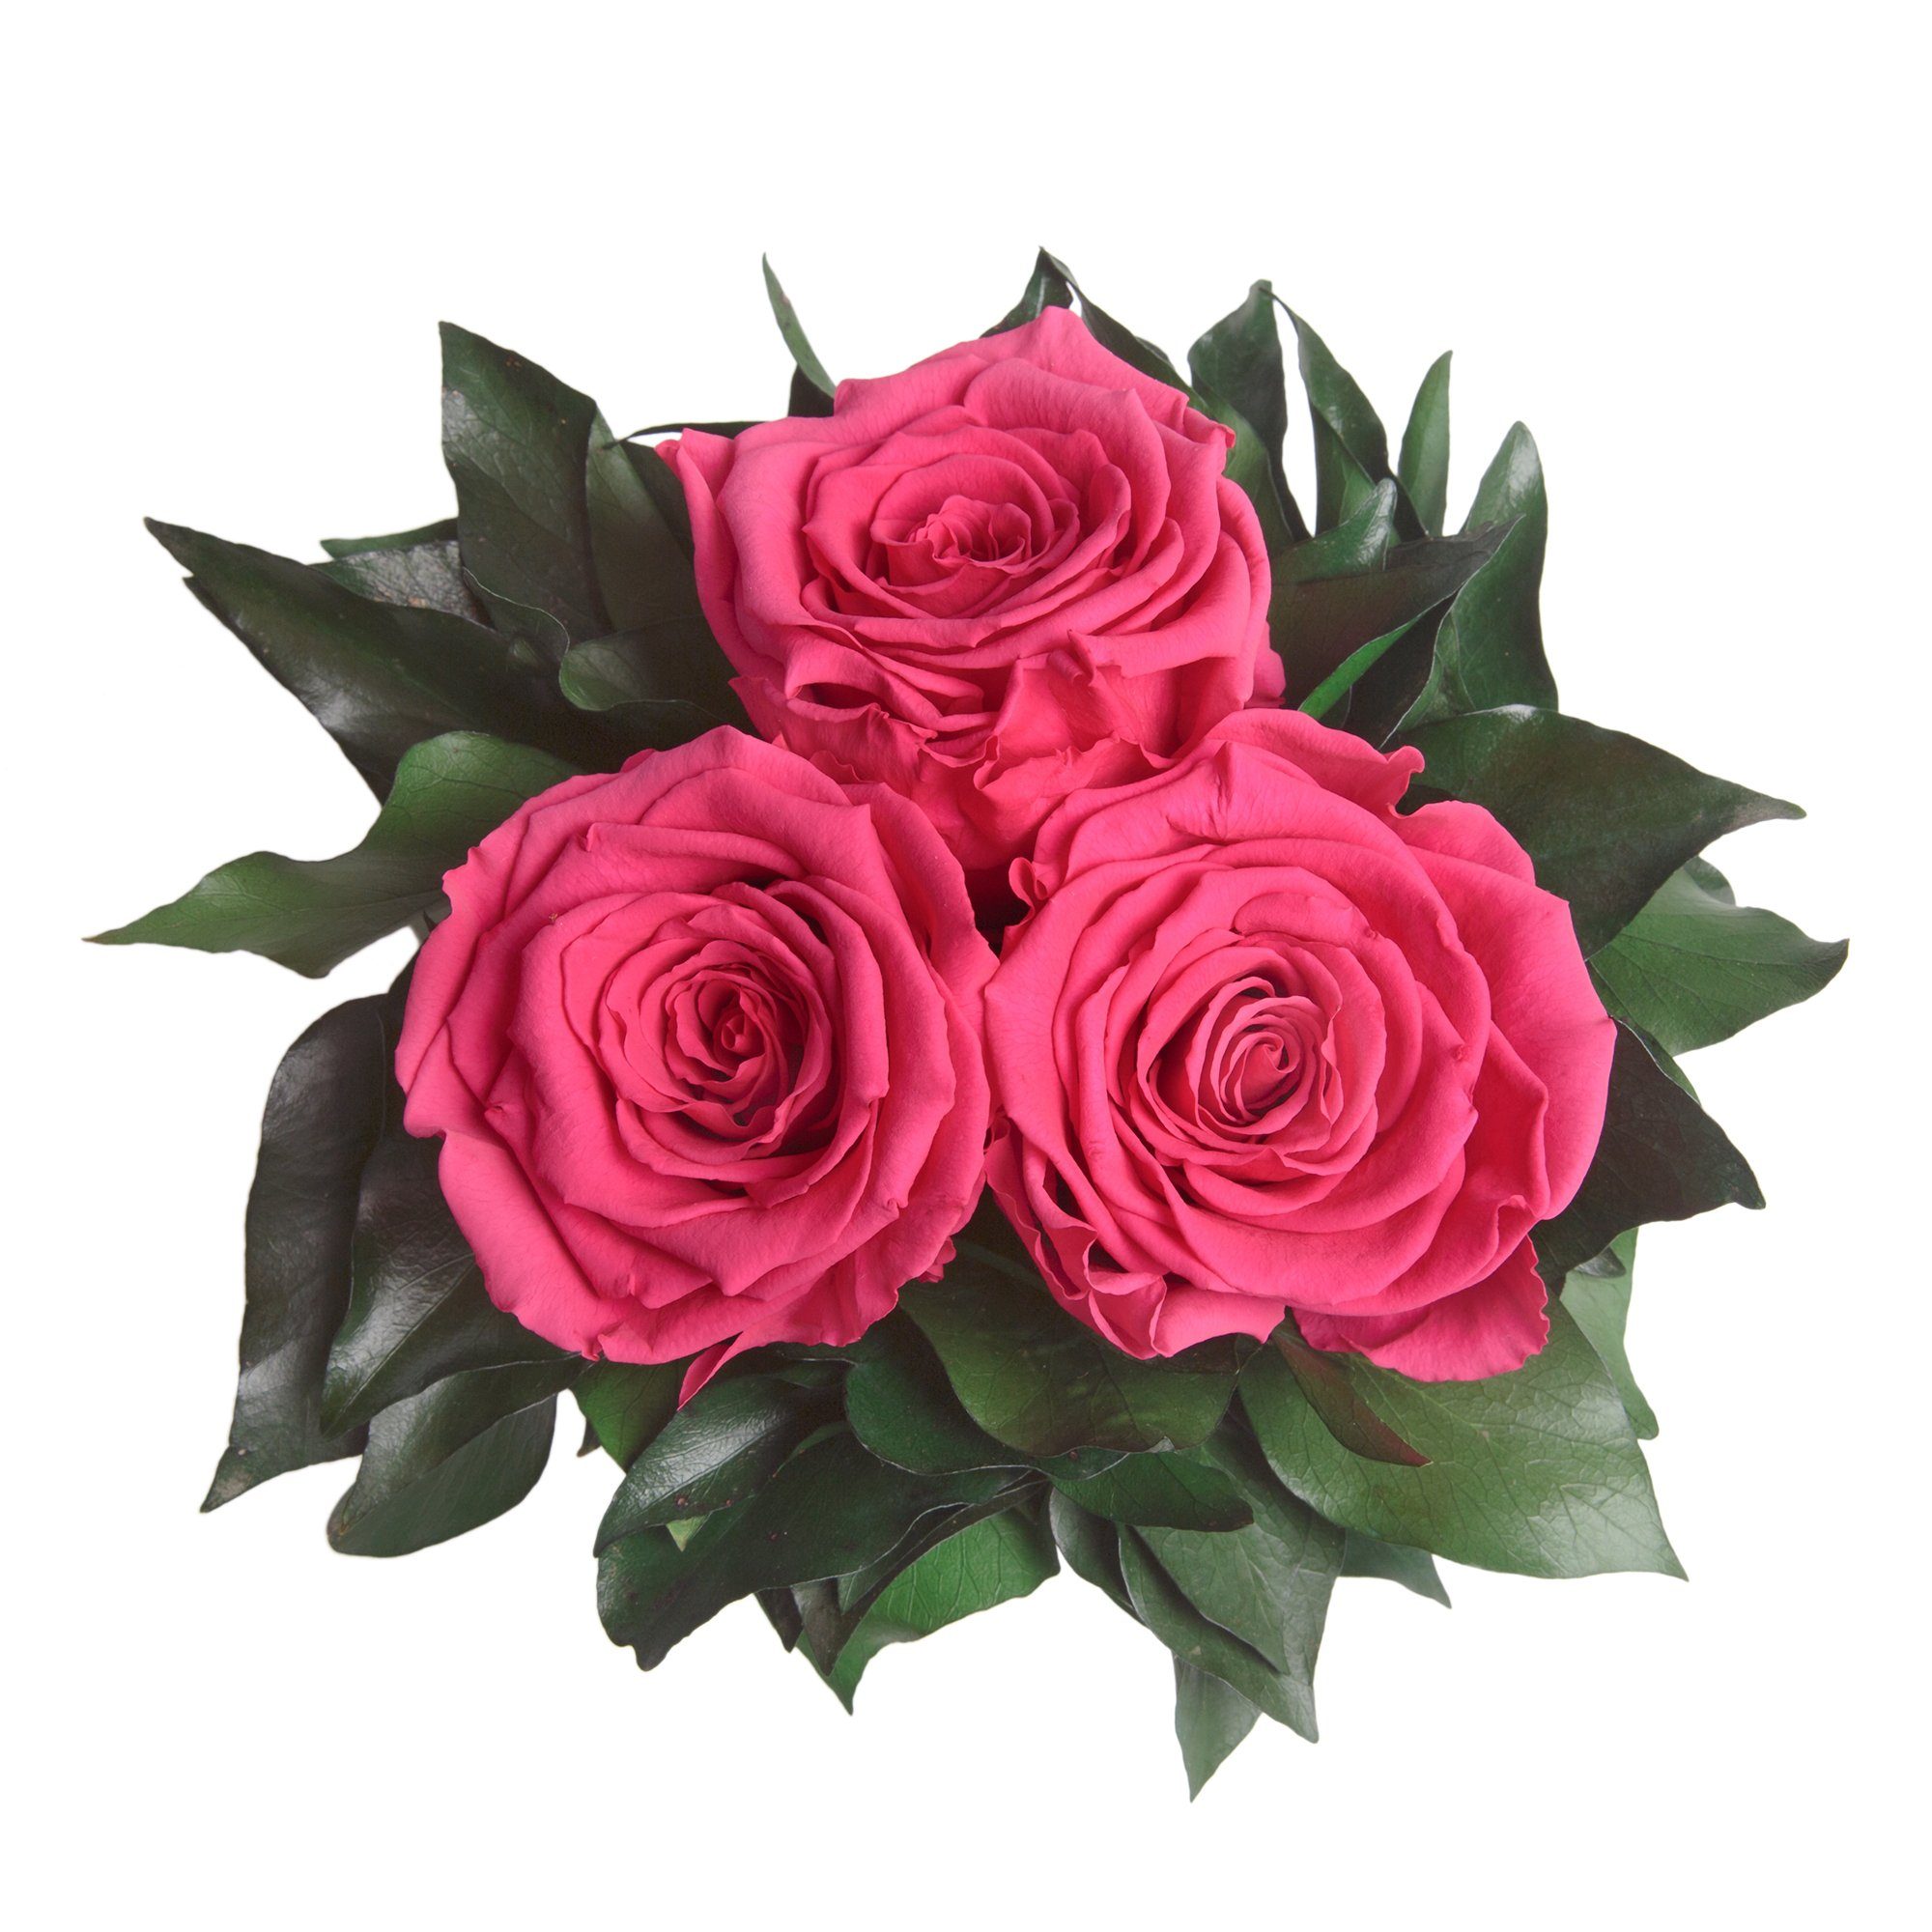 bis silberfarbene cm, zu Deko 3 Infinity Höhe Vase Pink SCHULZ Blumenstrauß haltbar Rosen Rose 15 Kunstorchidee 3 Heidelberg, Rose, ROSEMARIE Jahre Wohnzimmer